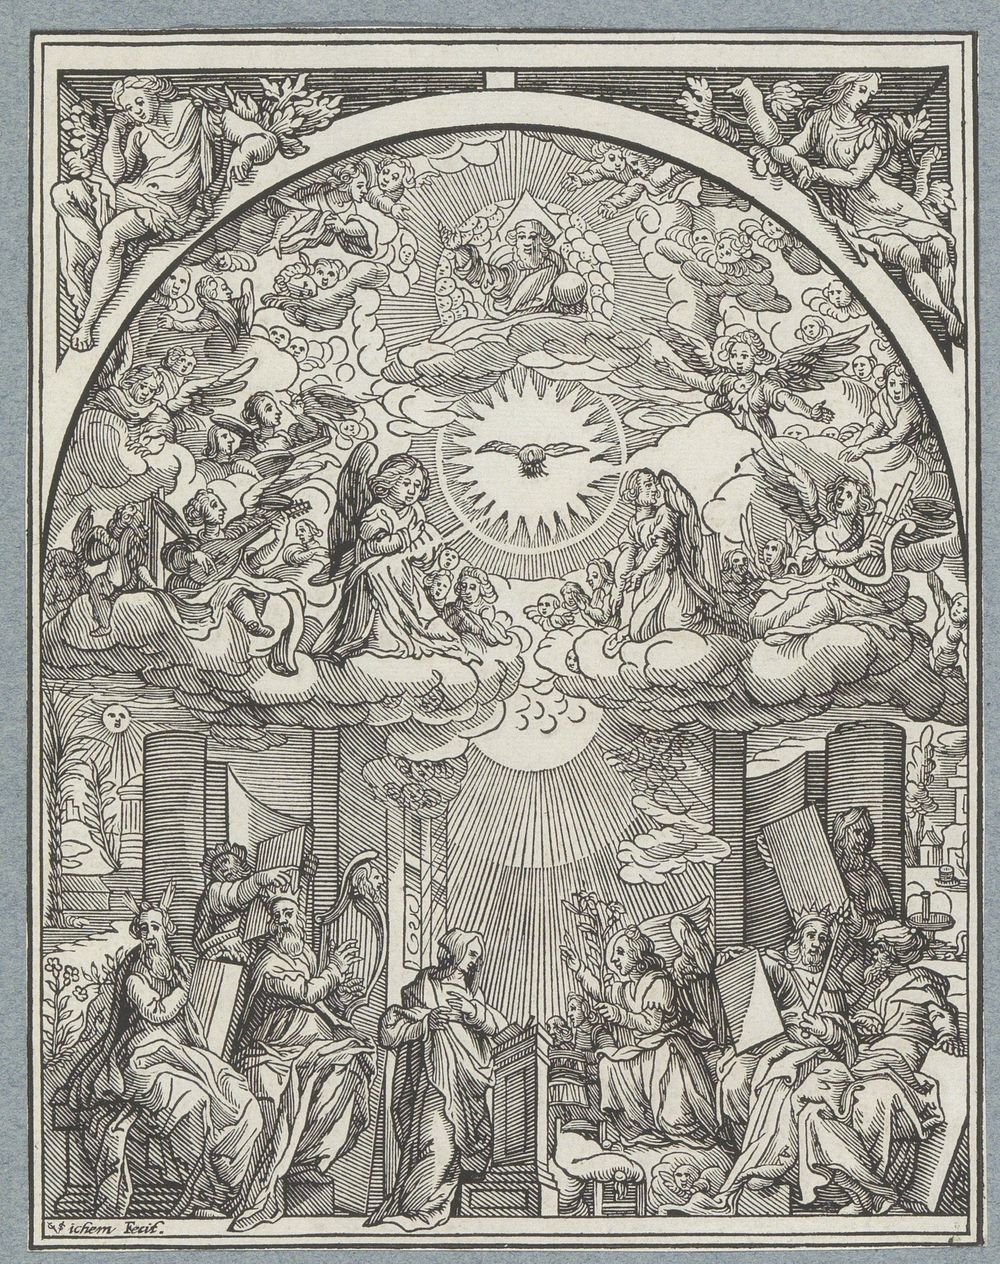 Annunciatie (1591 - 1657) by Christoffel van Sichem II, Cornelis Cort and Federico Zuccaro